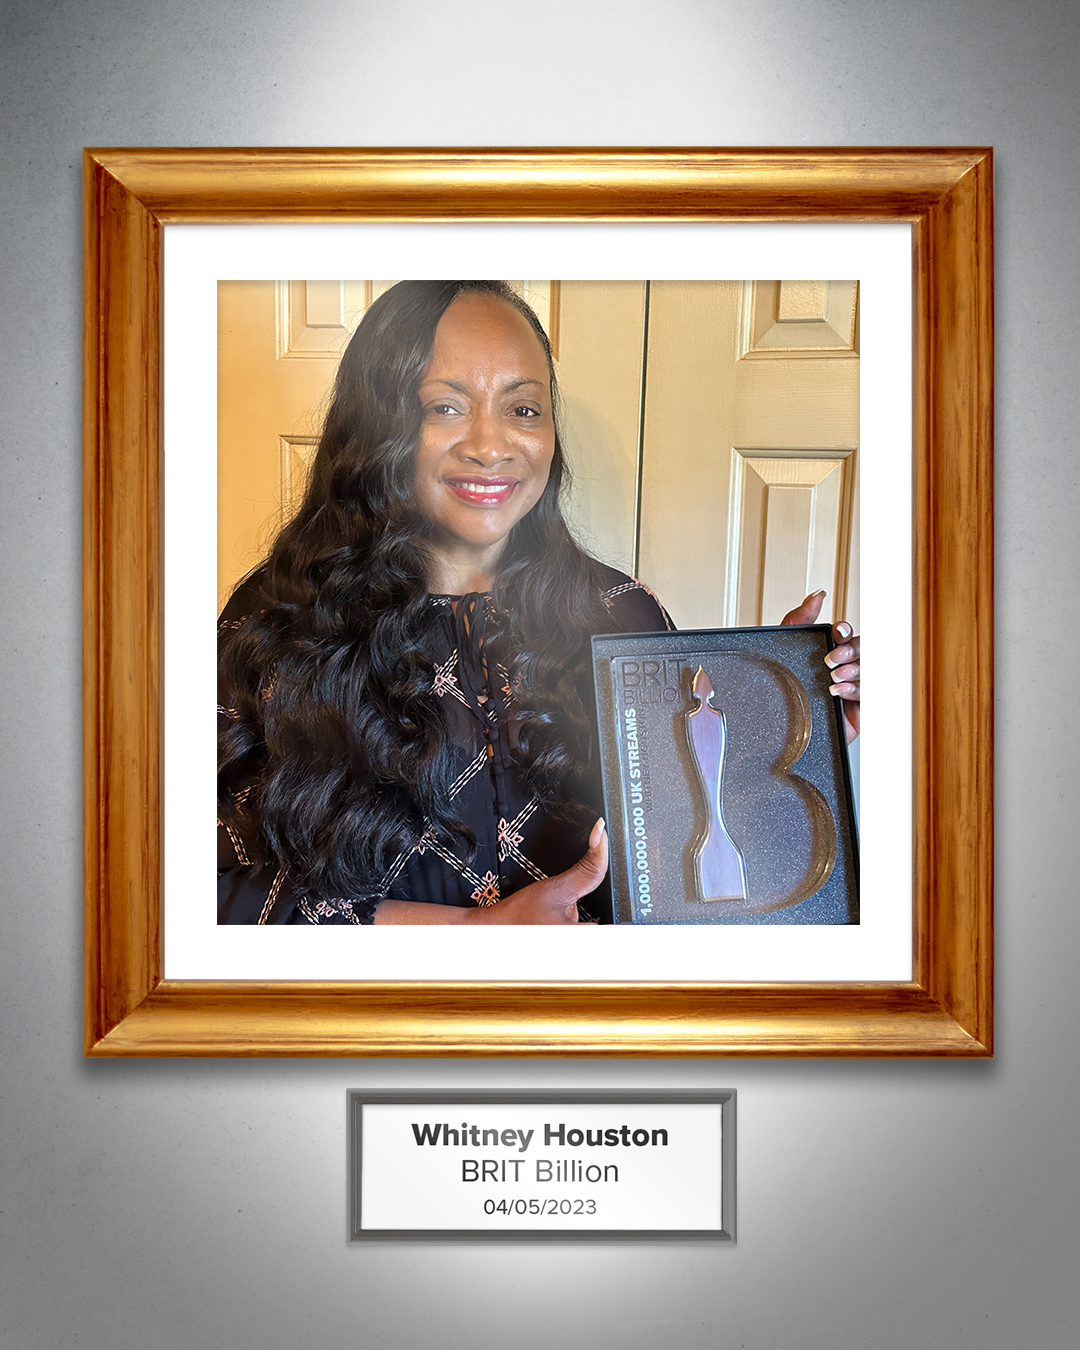 BRIT Billion: Whitney Houston